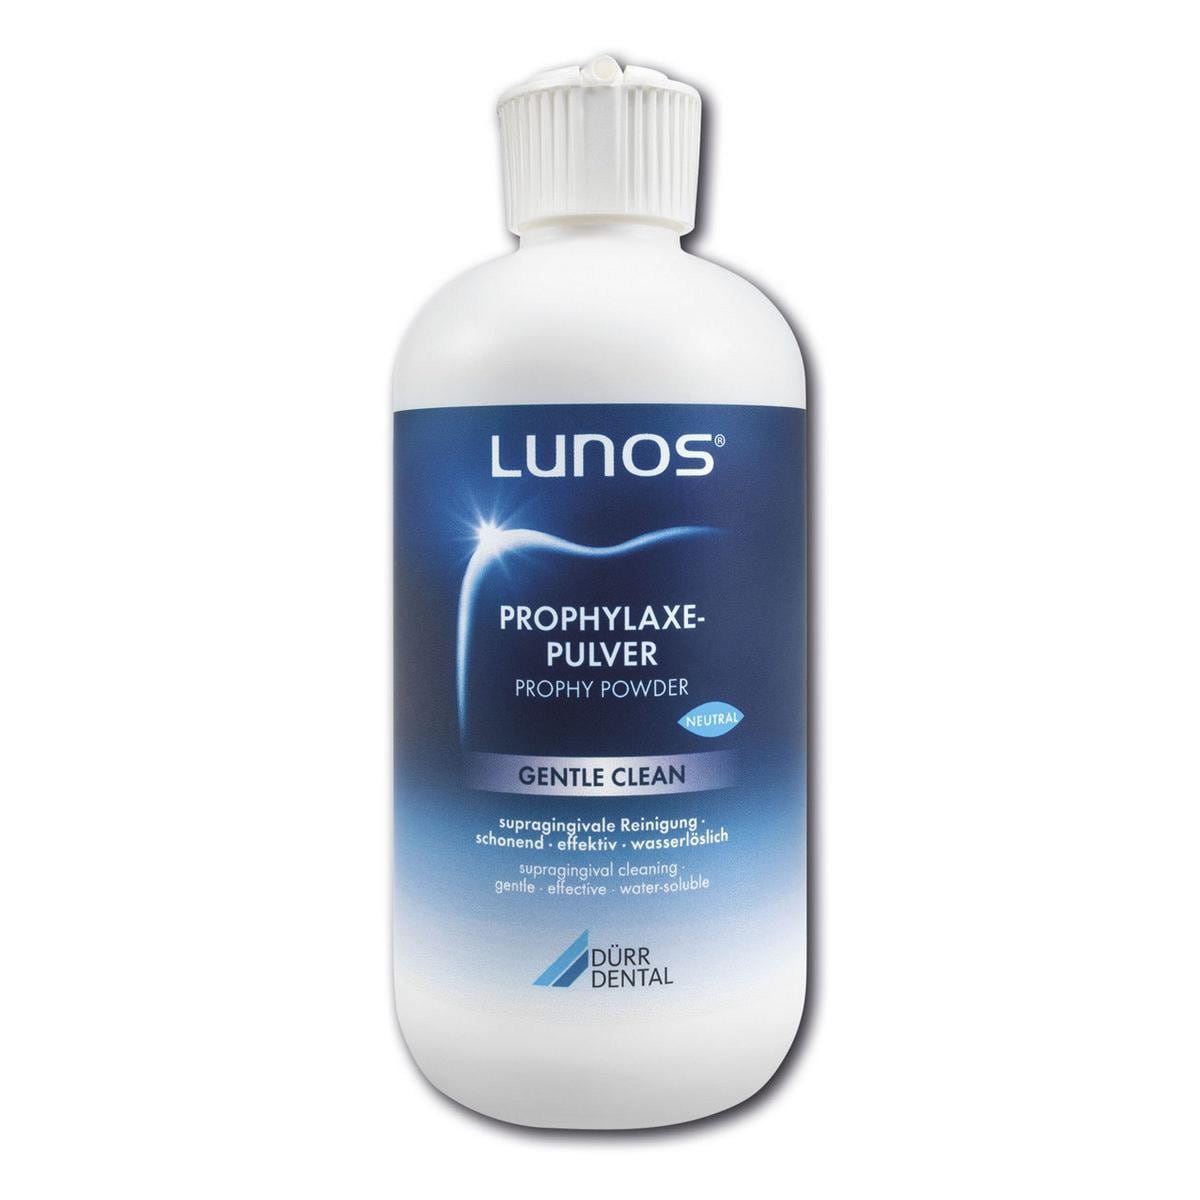 Lunos Prophylaxepoeder Gentle Clean - Neutral